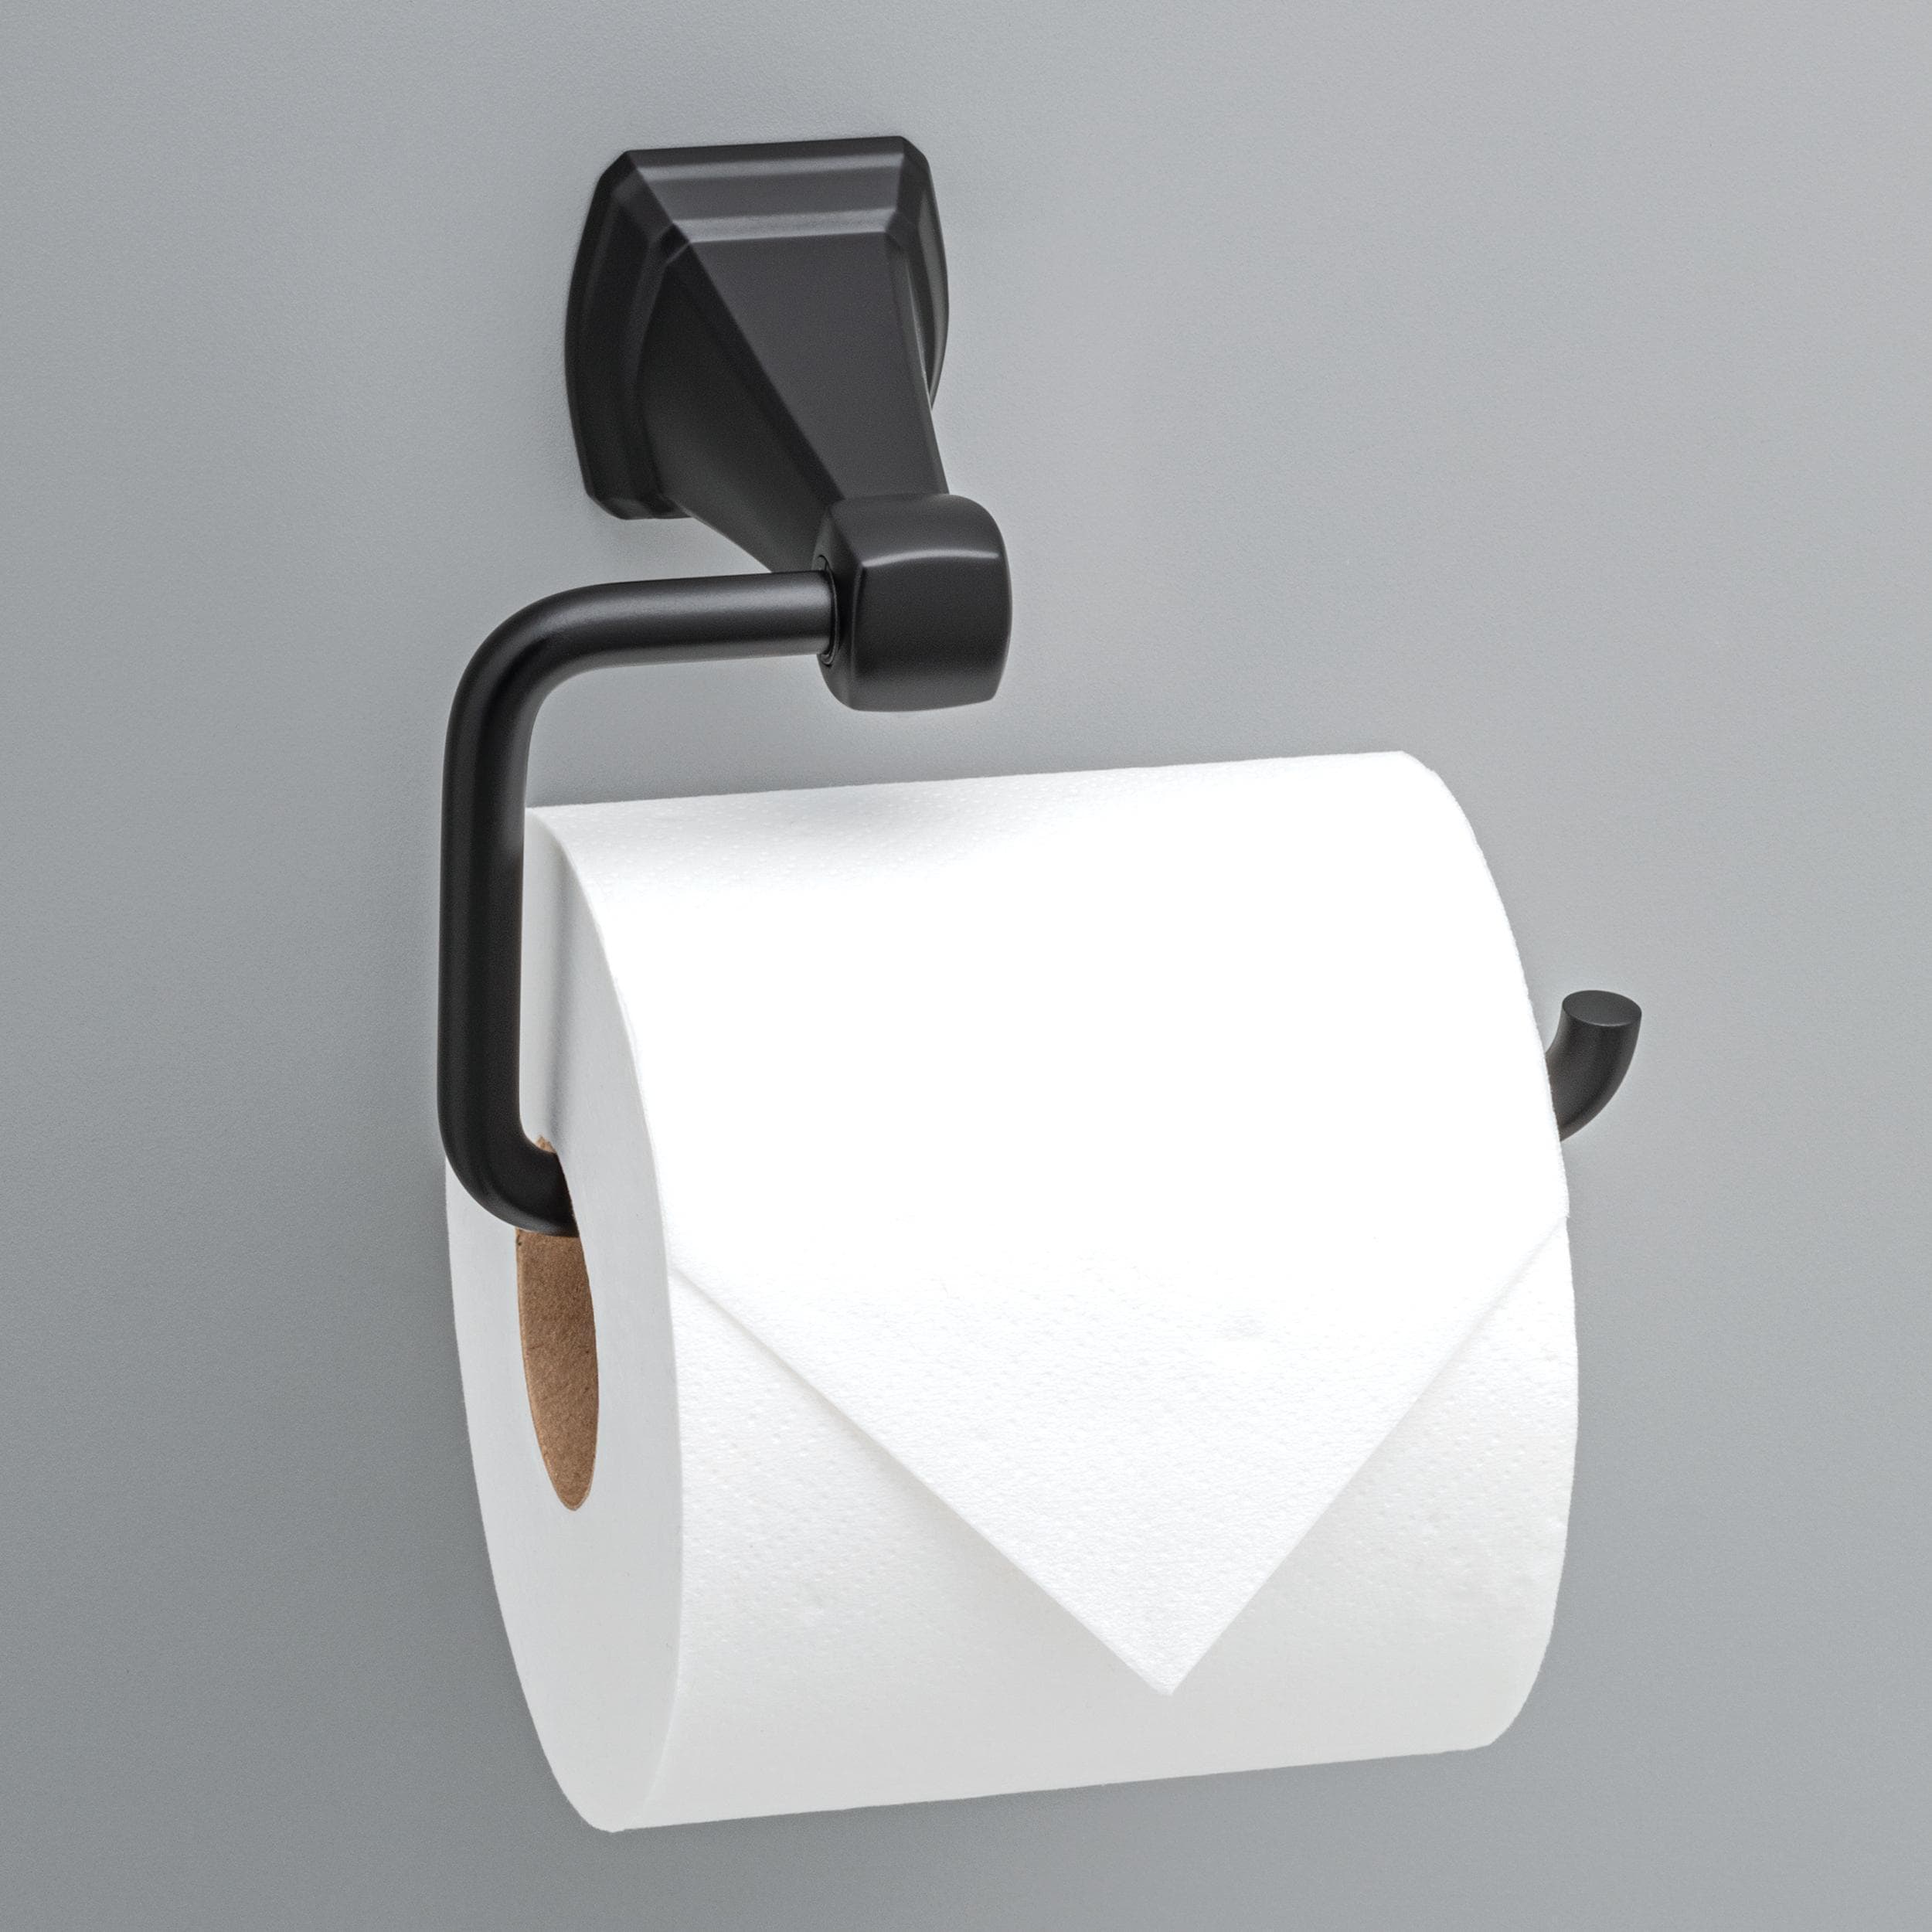 Delta Becker Matte Black Wall Mount Euro Toilet Paper Holder with Storage